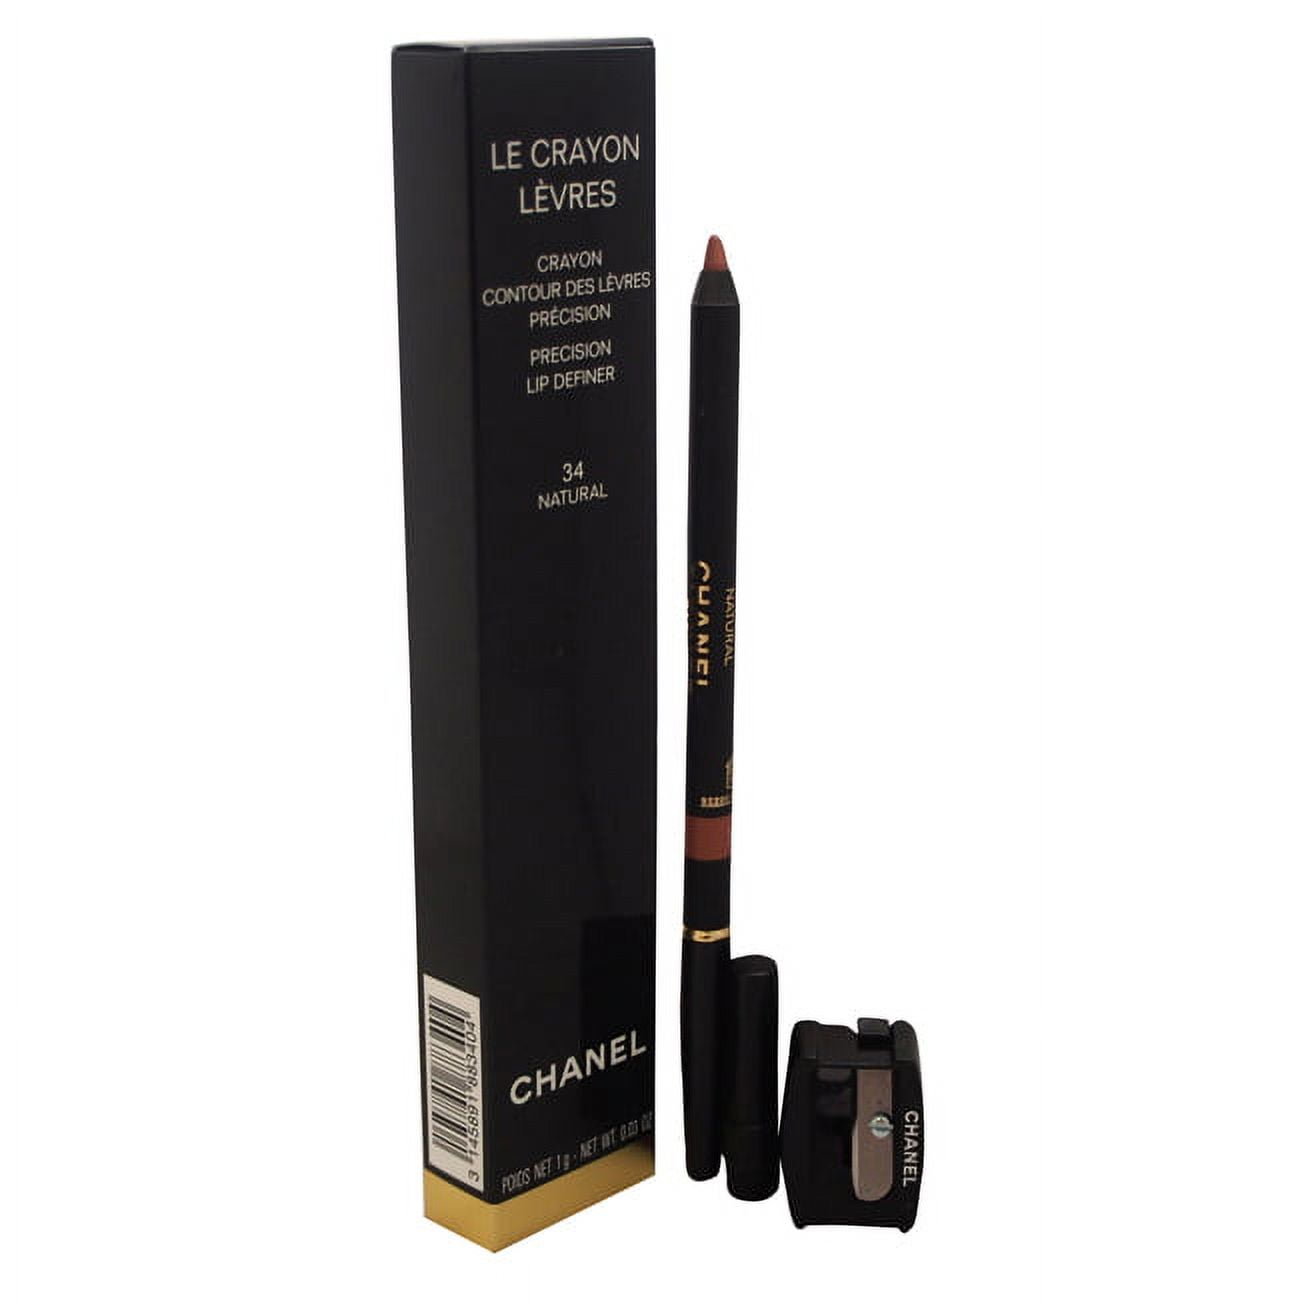 Chanel Le Crayon Levres Precision Lip Definer 34 Natural